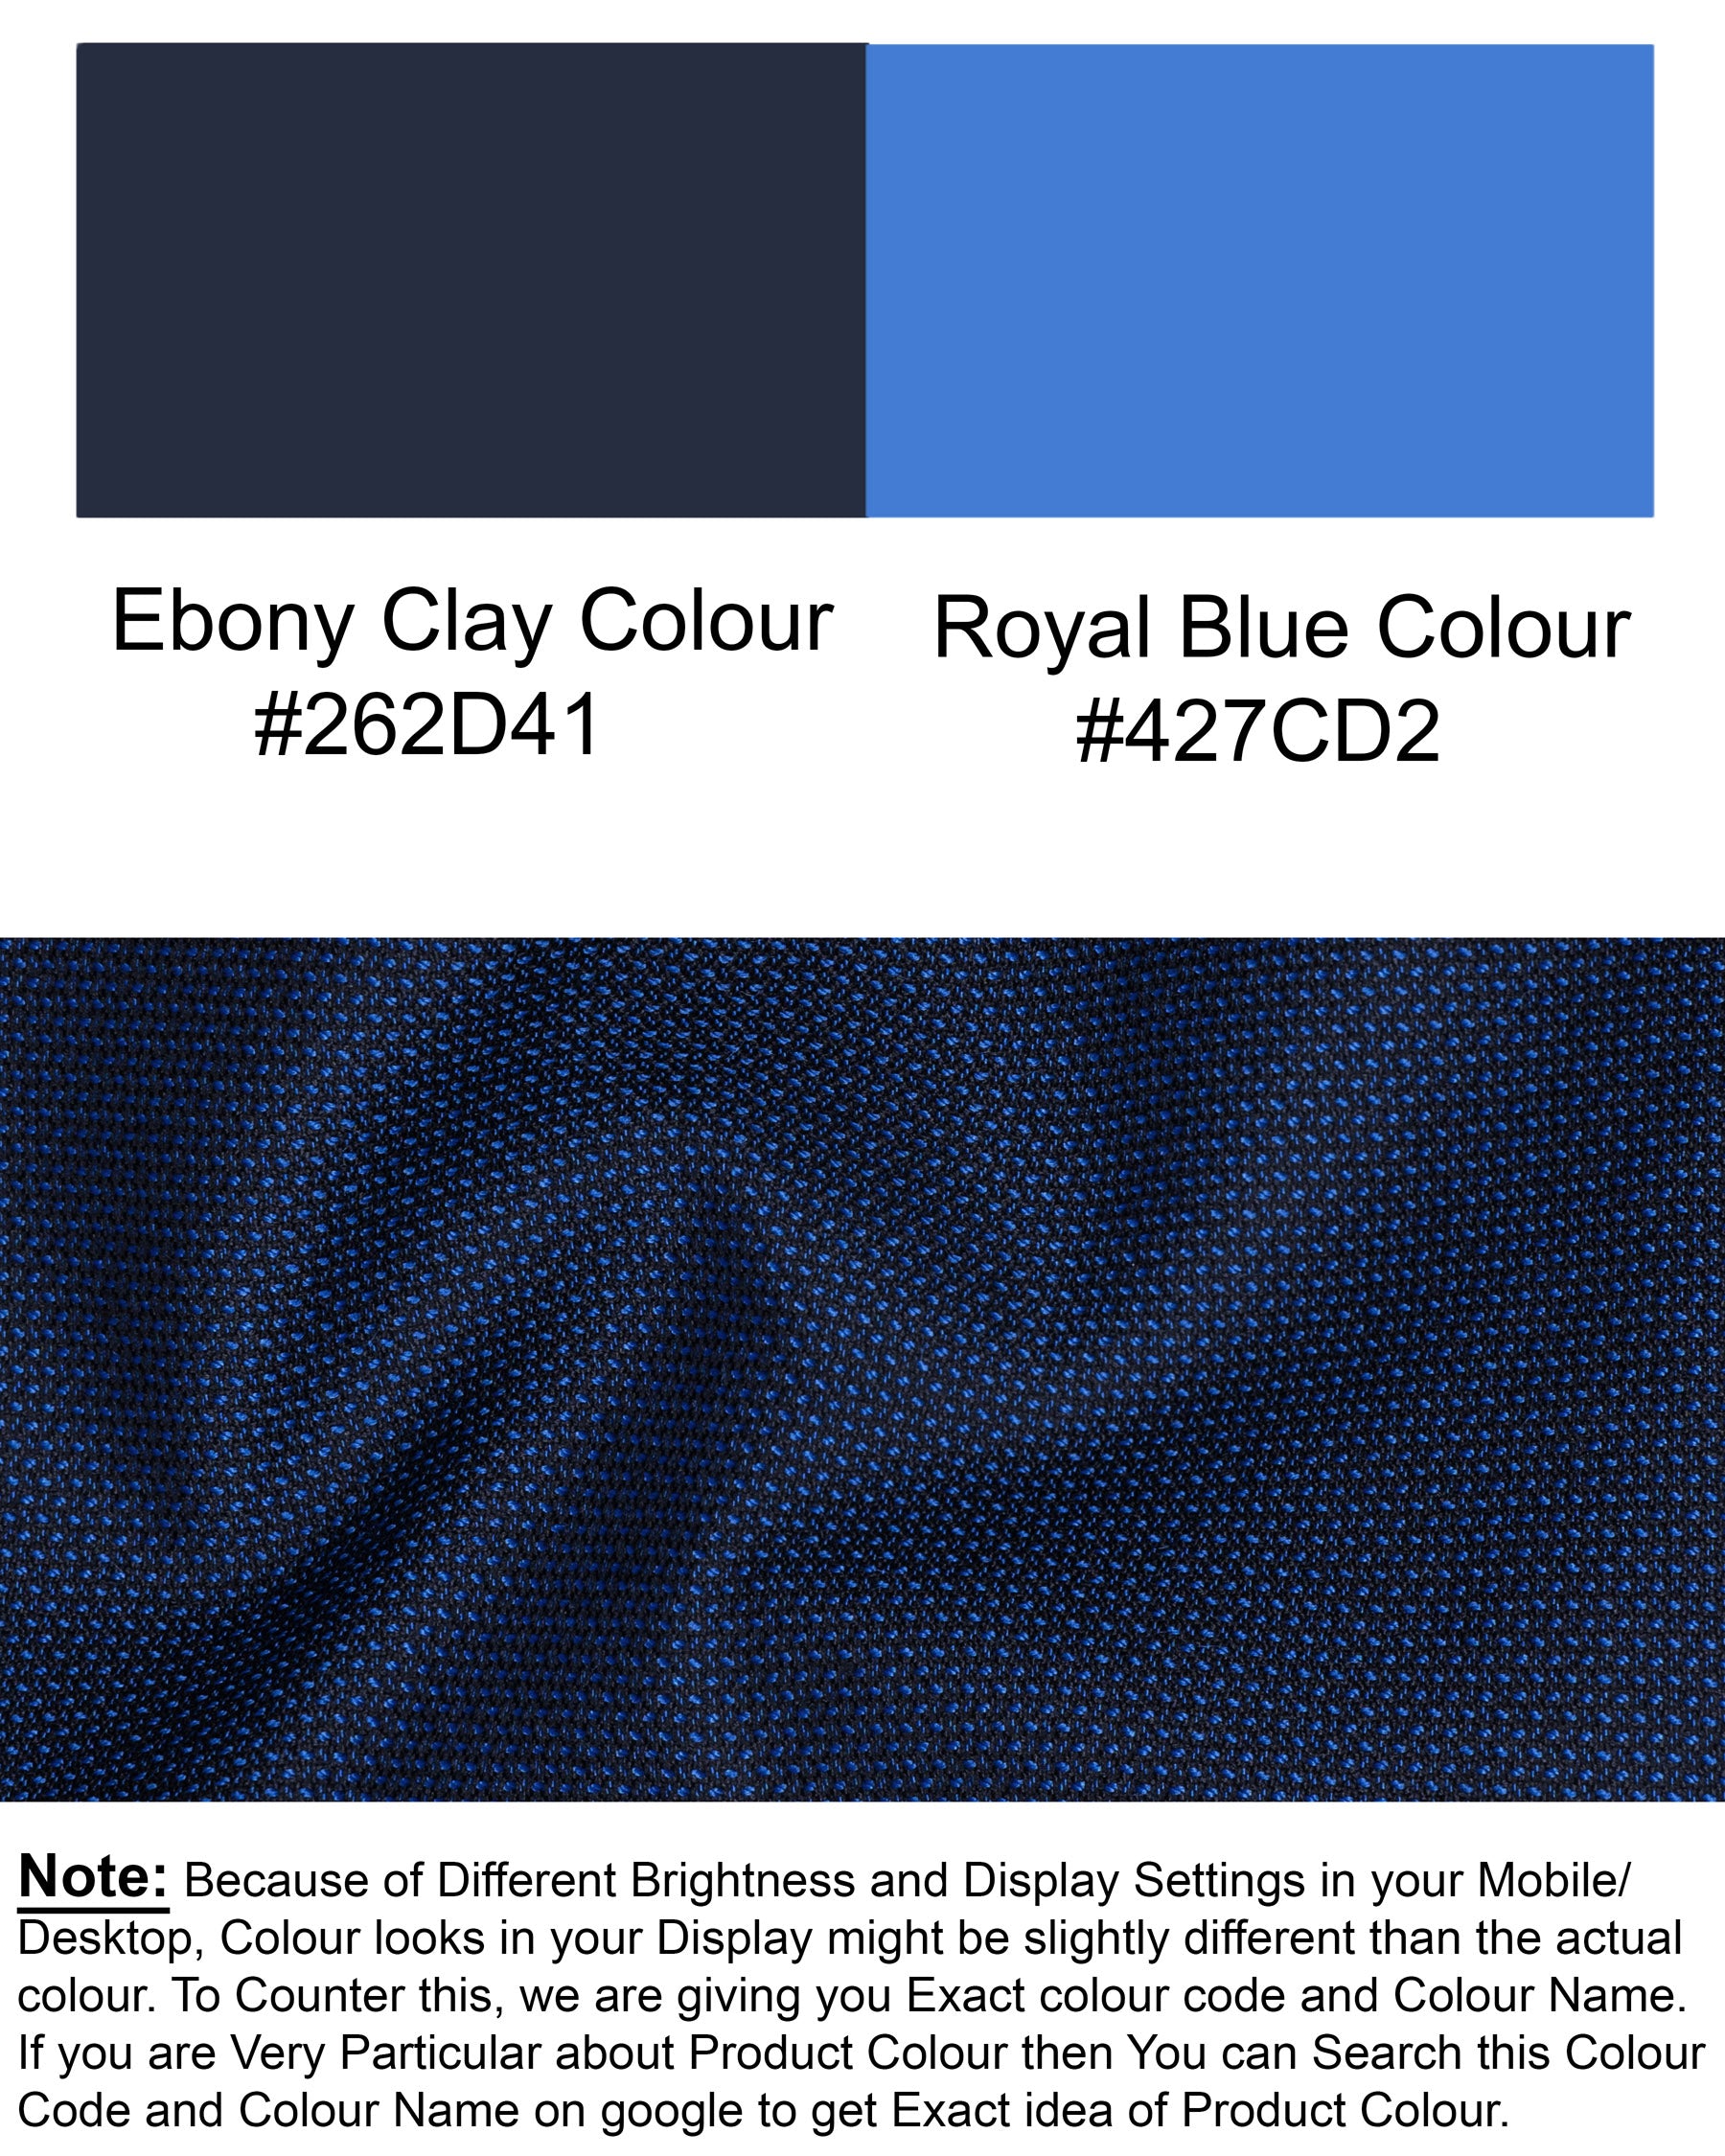 Royal Blue Cross Button Bandhgala Wool rich Suit ST1406-CBG-36, ST1406-CBG-38, ST1406-CBG-40, ST1406-CBG-42, ST1406-CBG-44, ST1406-CBG-46, ST1406-CBG-48, ST1406-CBG-50, ST1406-CBG-52, ST1406-CBG-54, ST1406-CBG-56, ST1406-CBG-58, ST1406-CBG-60